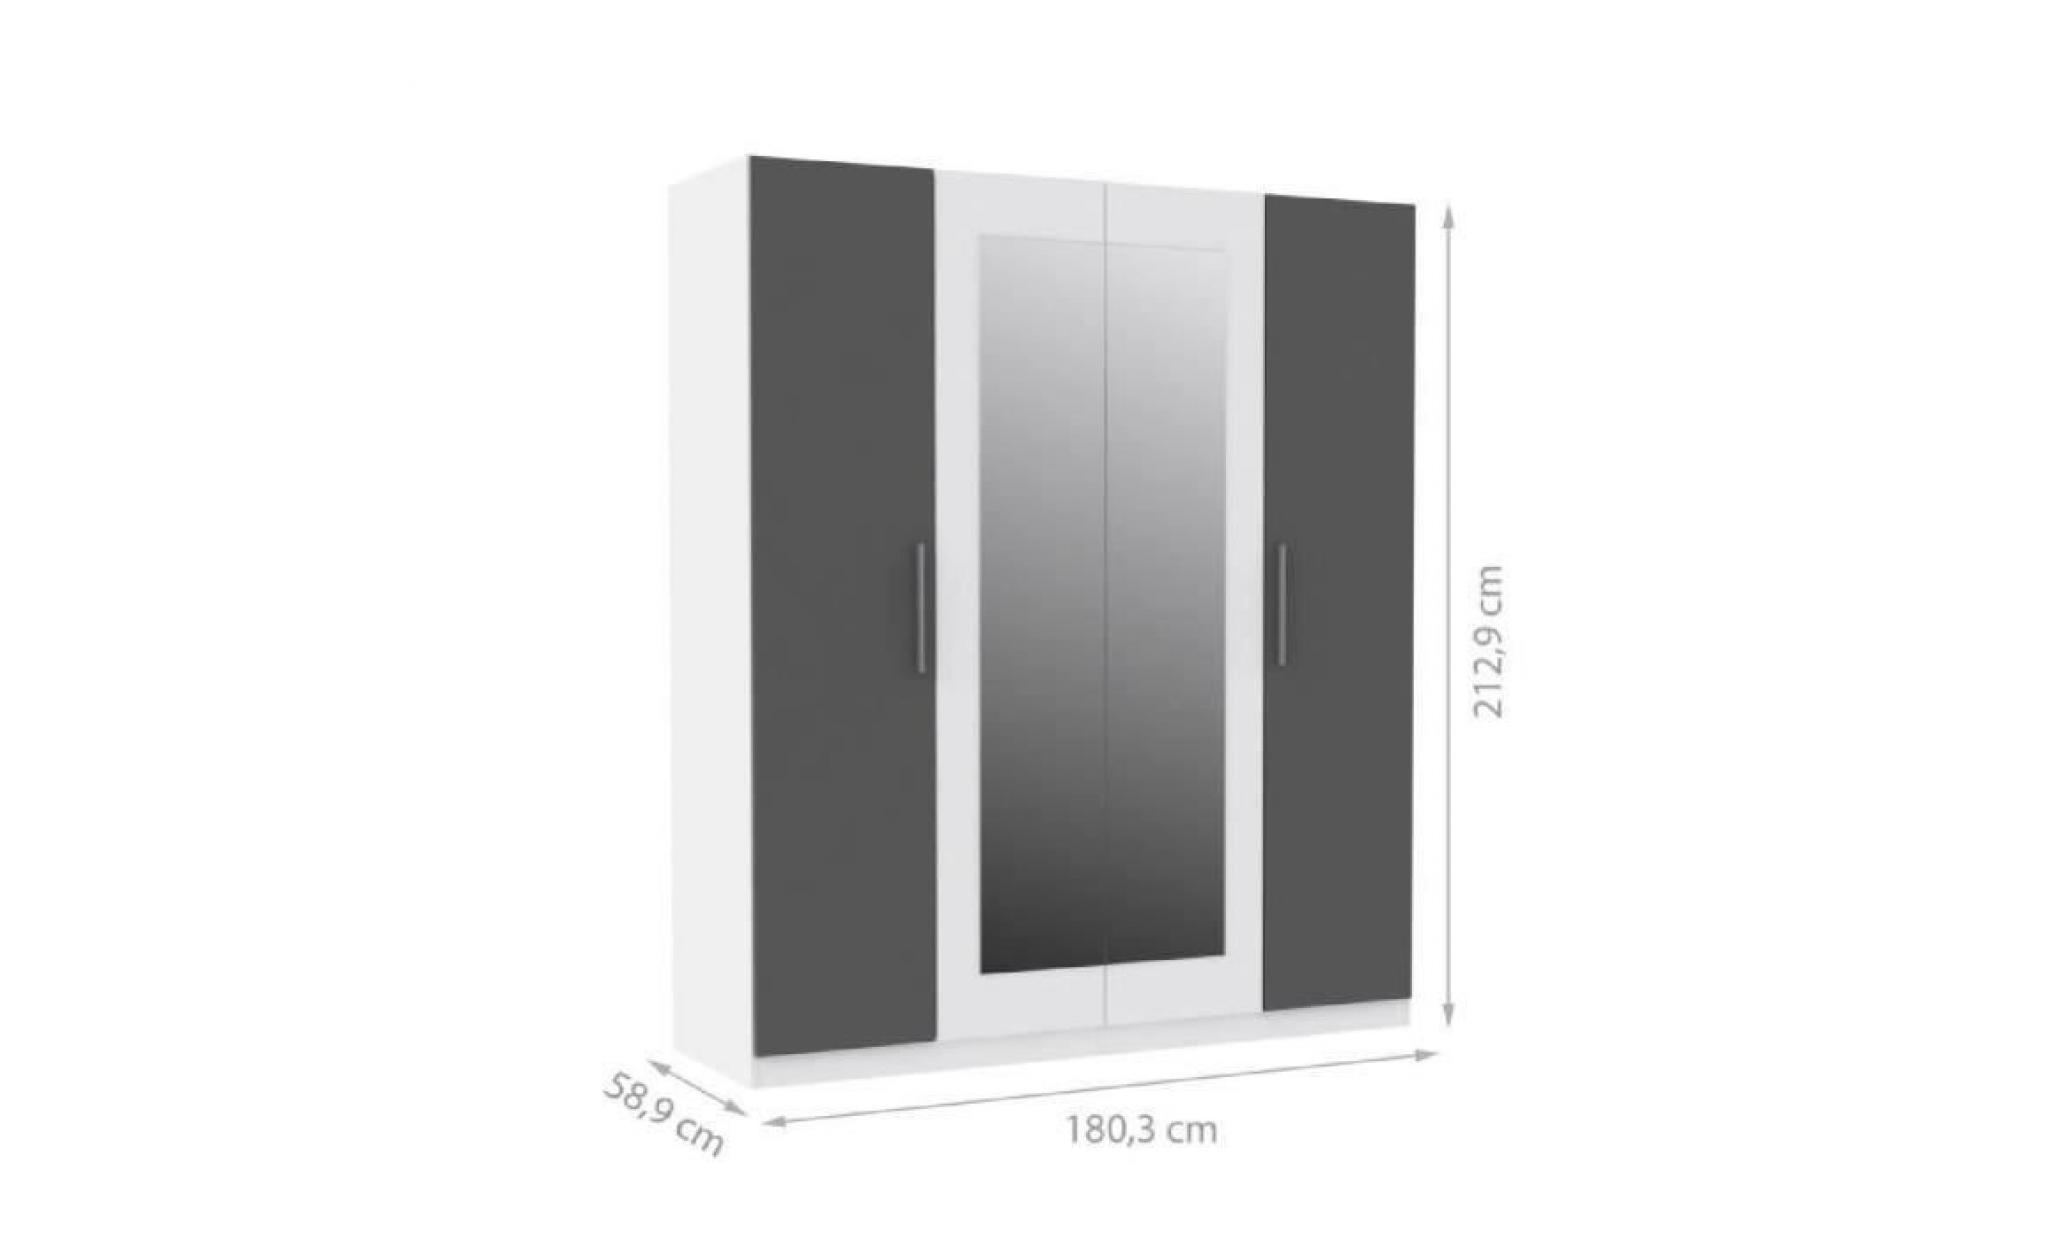 finlandek armoire de chambre pehmeÄ style contemporain blanc et gris   l 180,3 cm